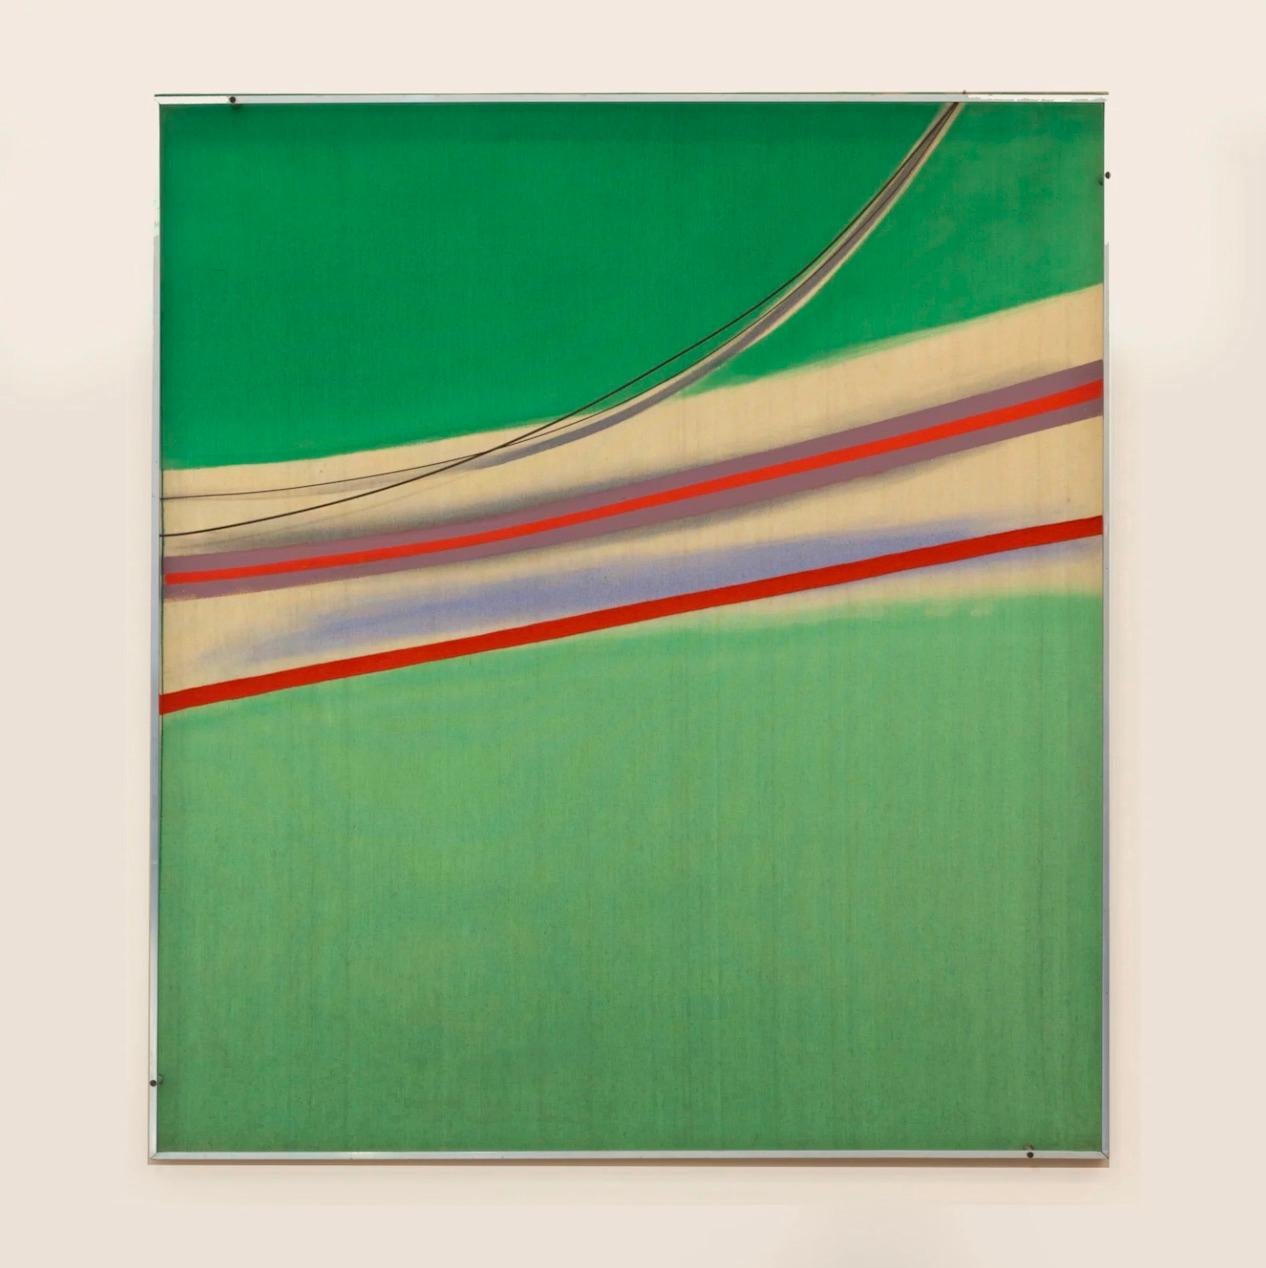 Grüne Projektion, 1971 - Arbeit auf Papier, Britische Abstraktion - Sandra Blow
Signiert und datiert auf Leinwand Überlappung auf der Rückseite
Acryl auf Leinwand, mit Aluminiumkonstruktion
54 x 48 Zoll

Sandra Blow RA (1925-2006) leistete mit ihren